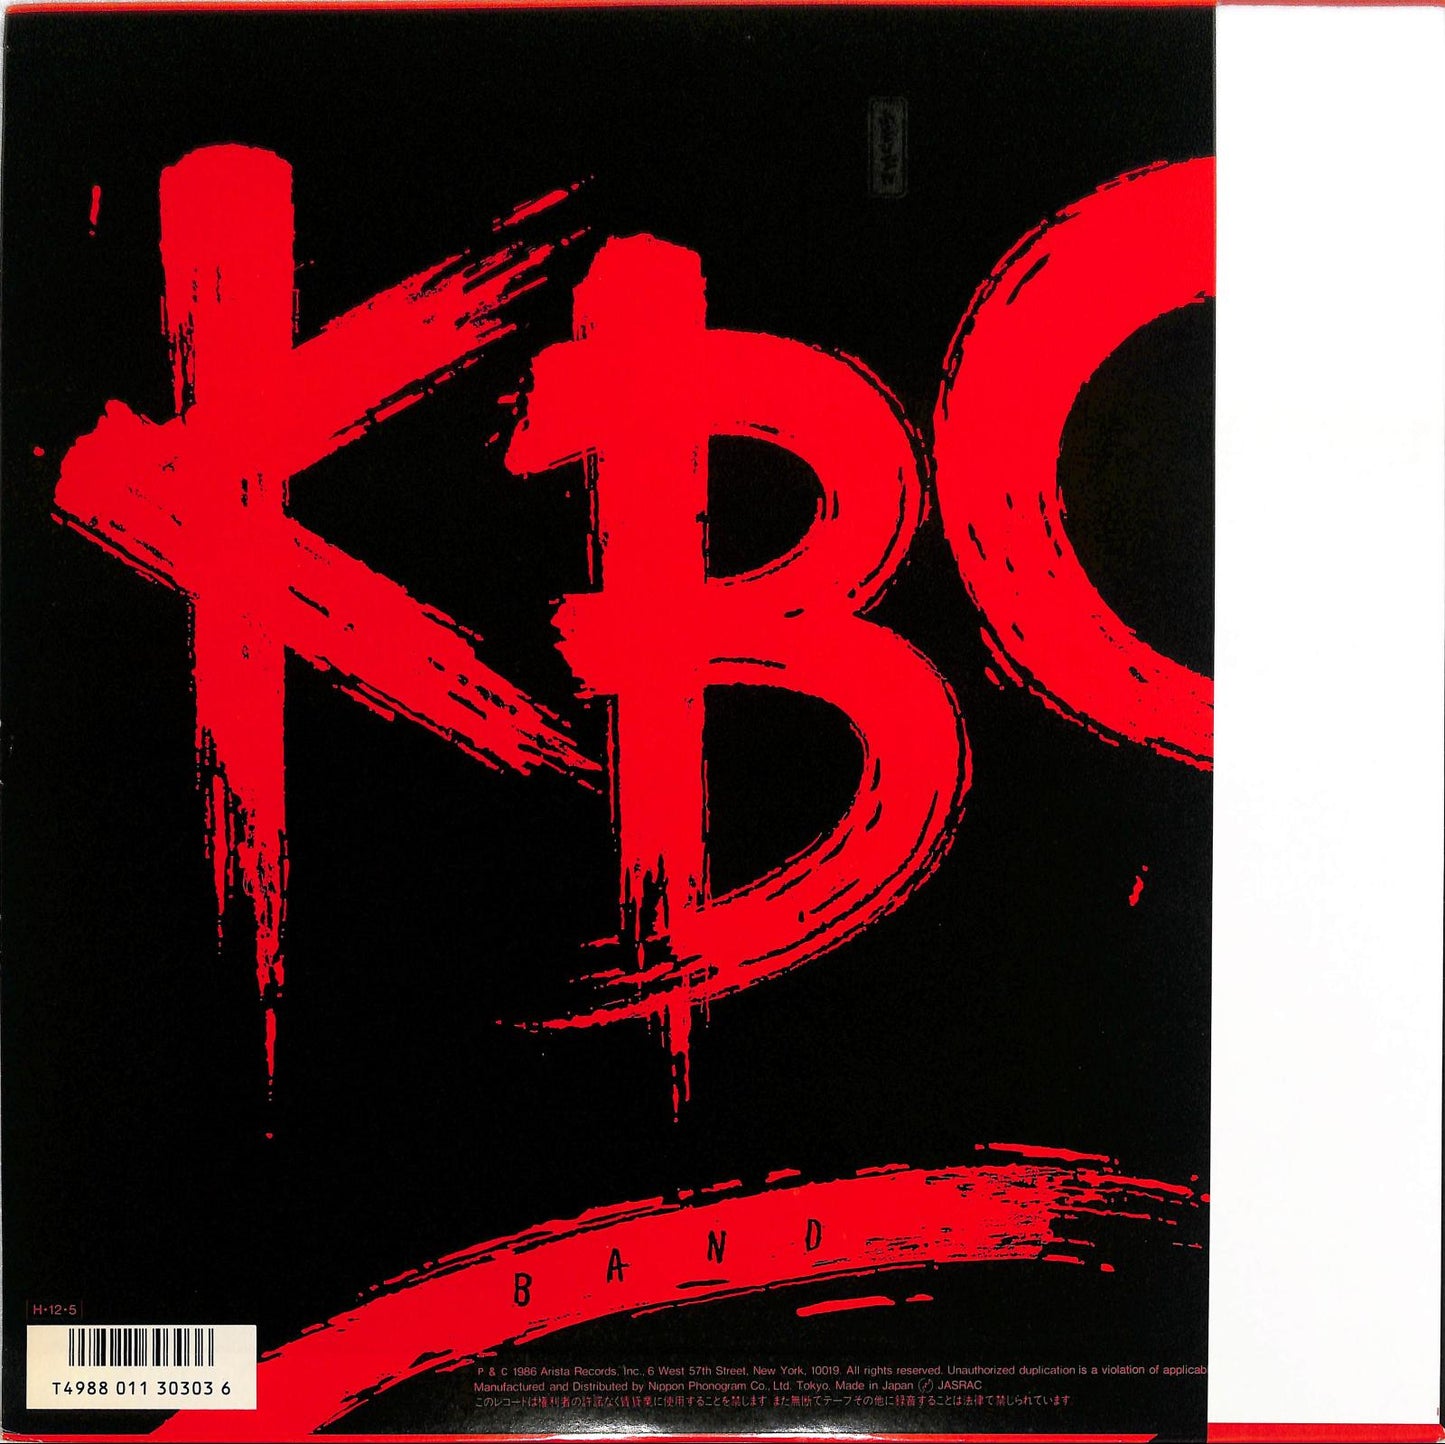 KBC BAND - KBC Band